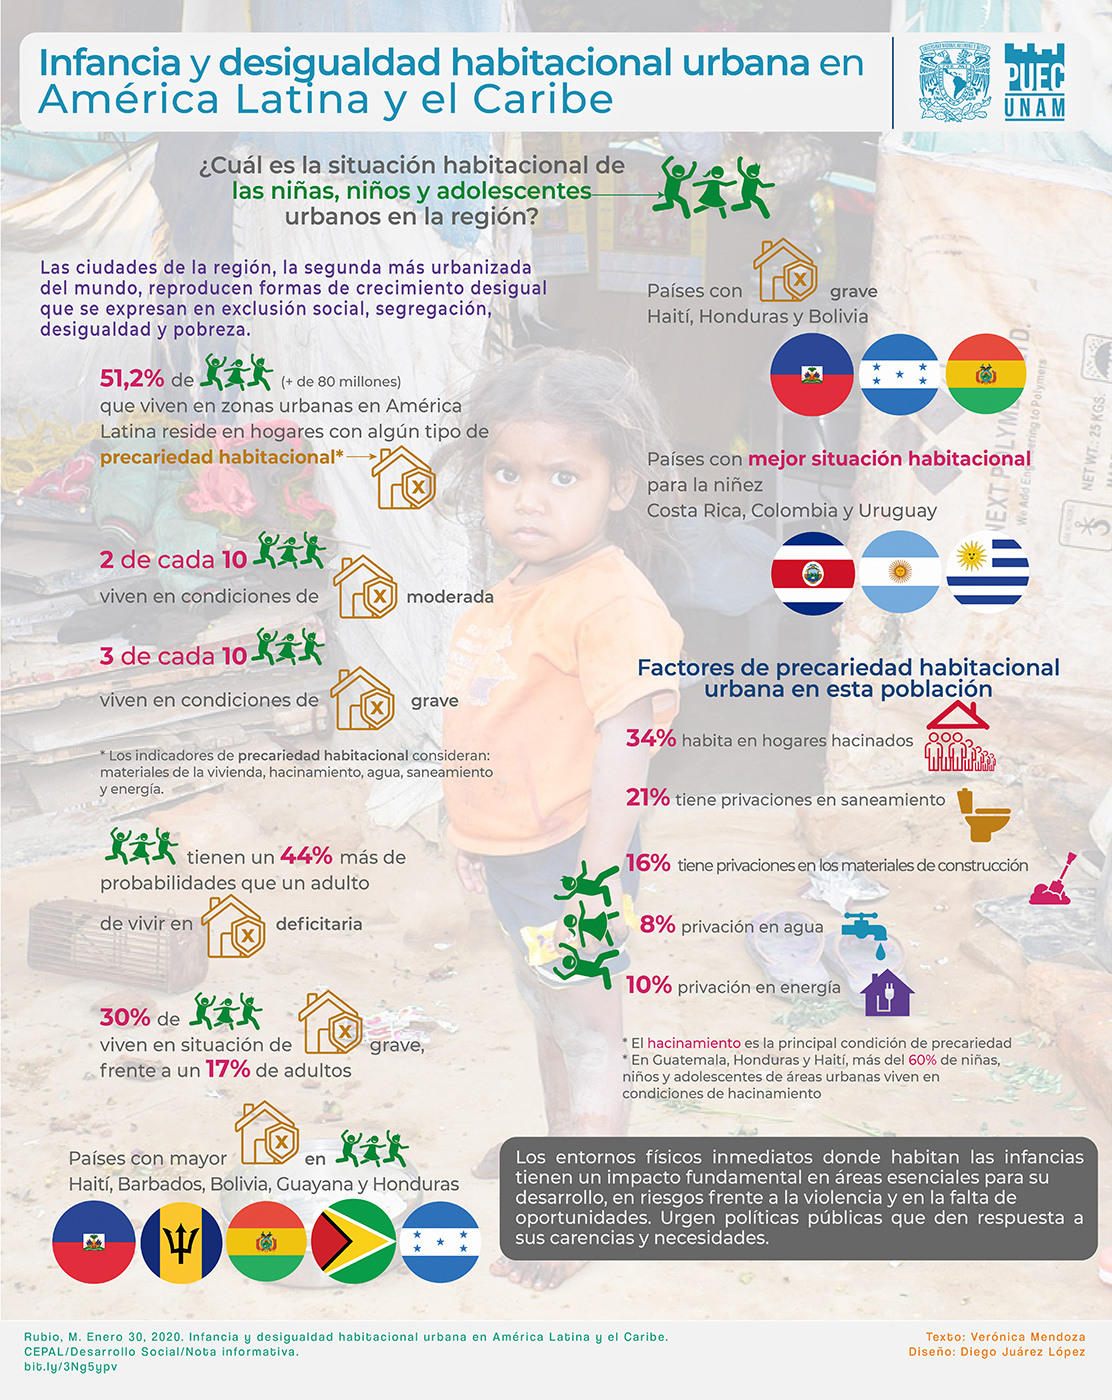 Infancia y desigualdad habitacional urbana en América Latina y el Caribe